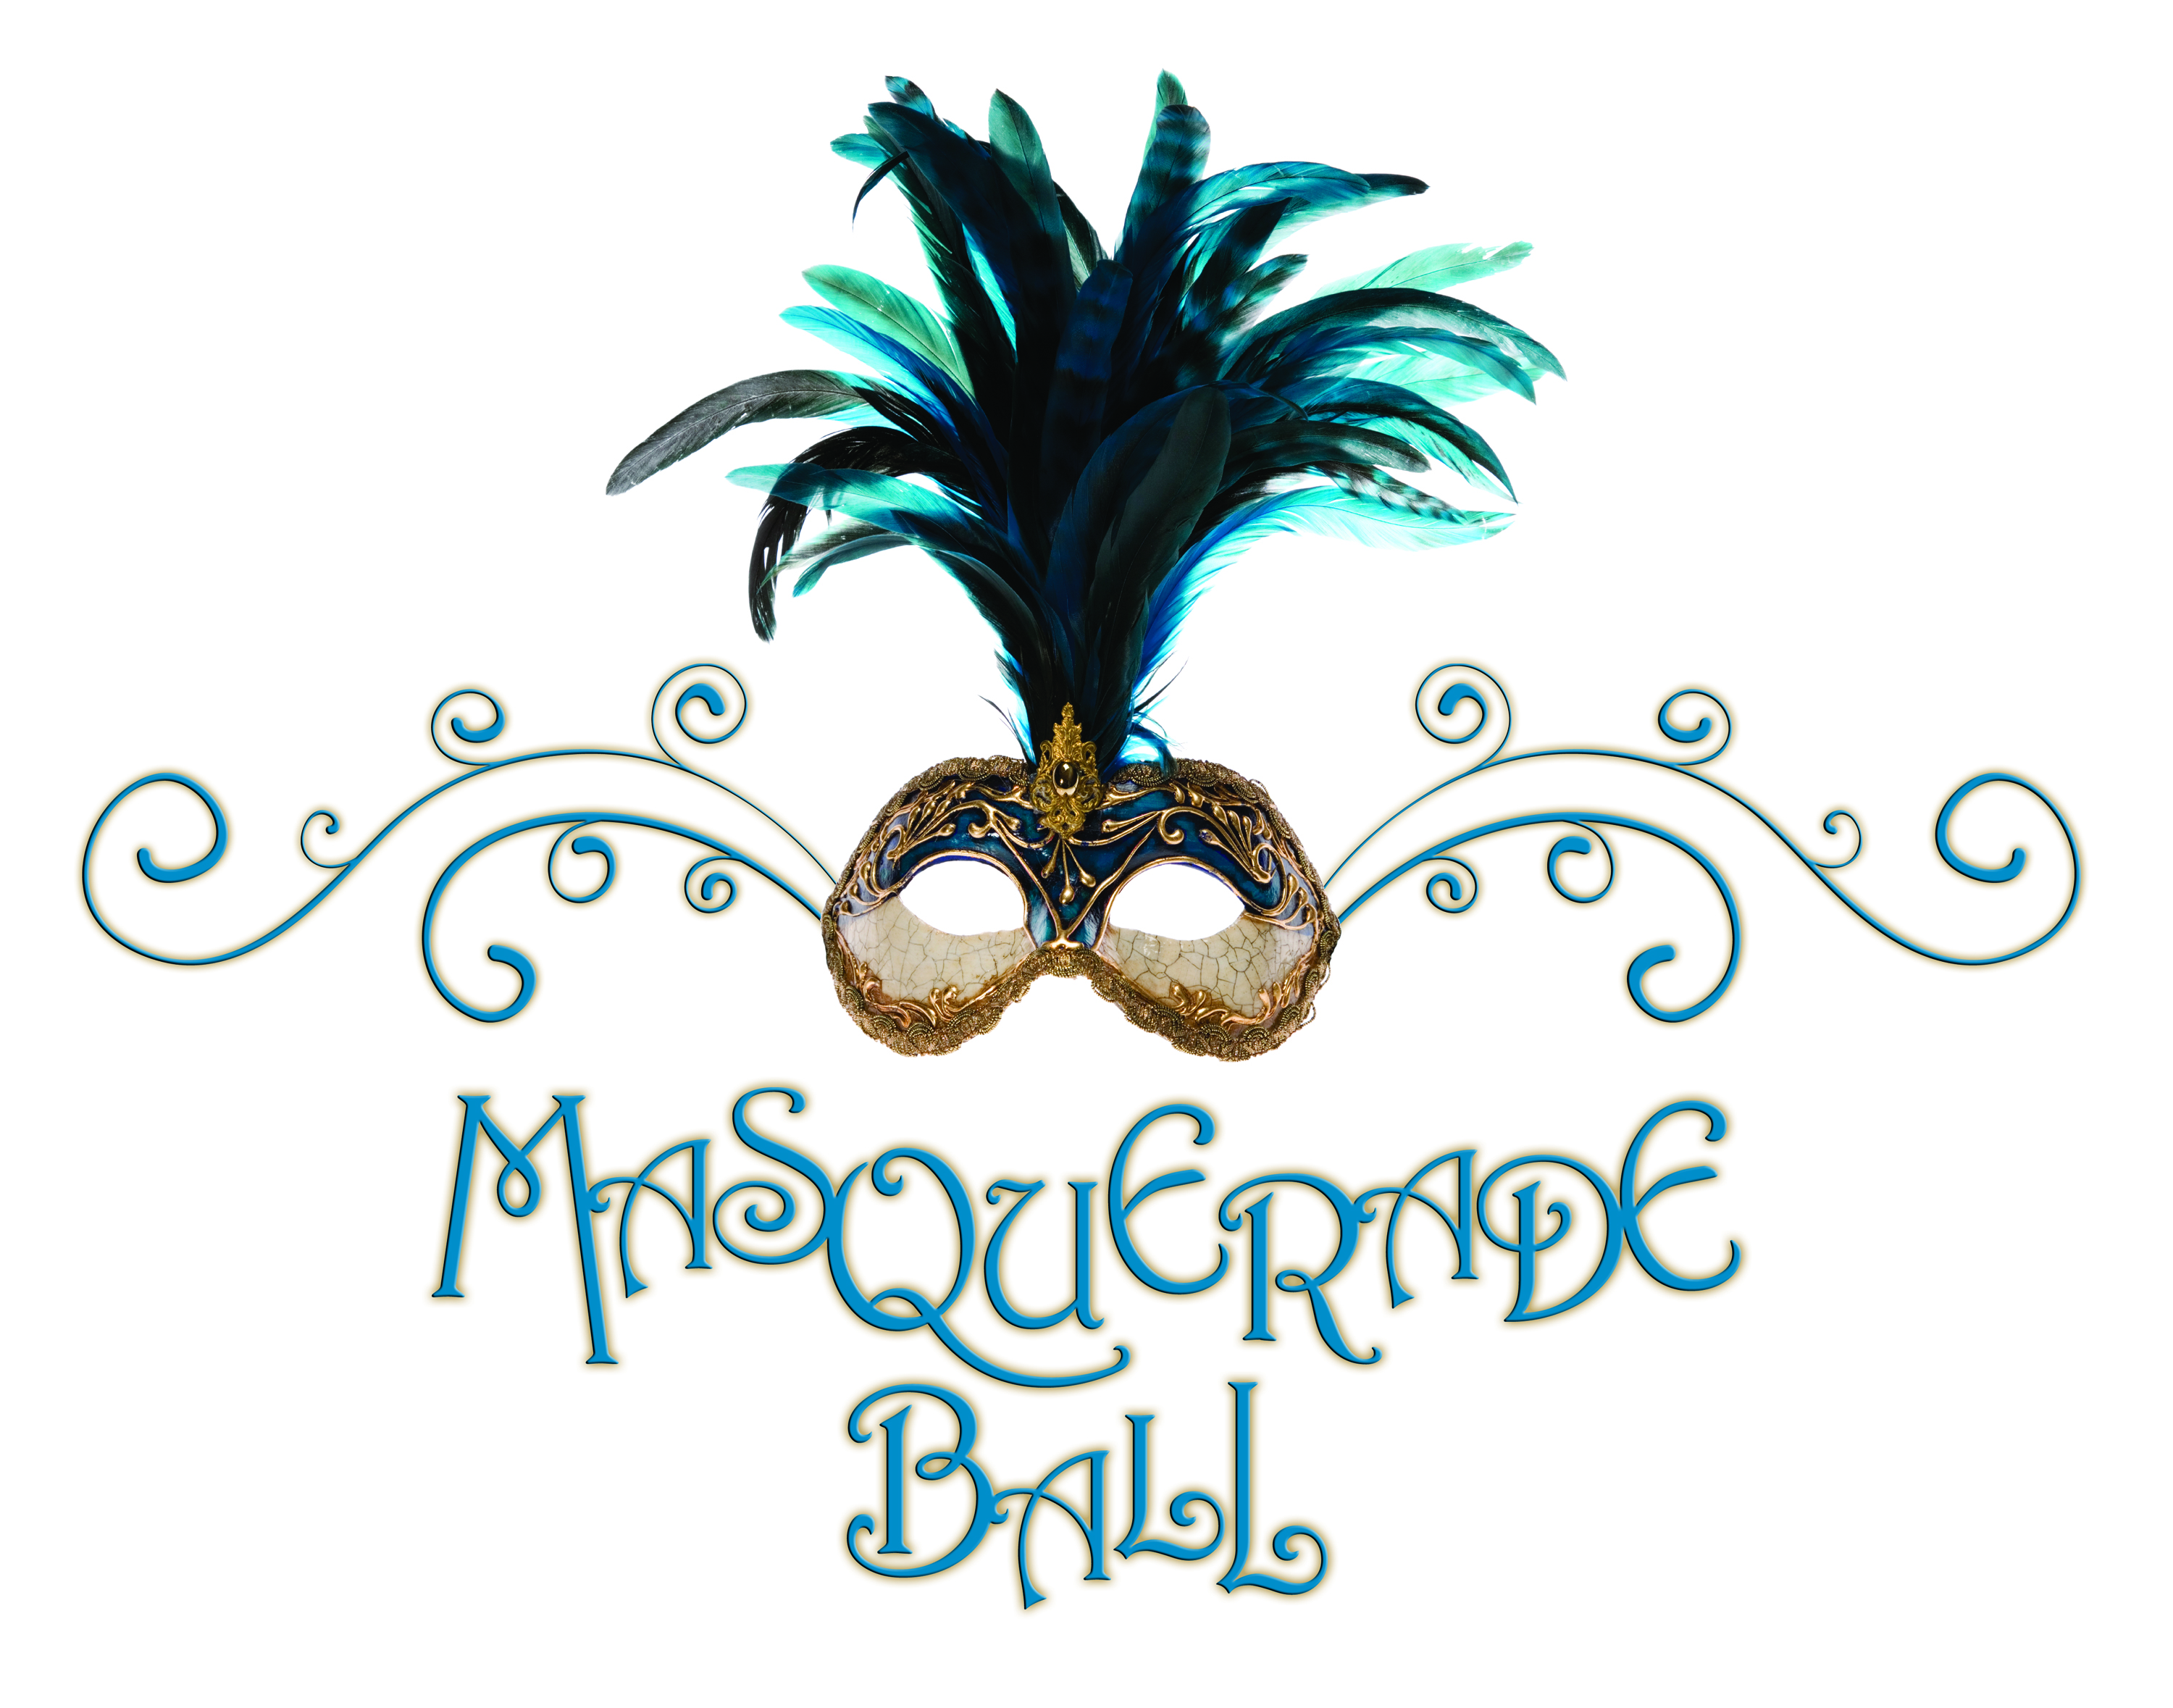 Masquerade Ball Clipart